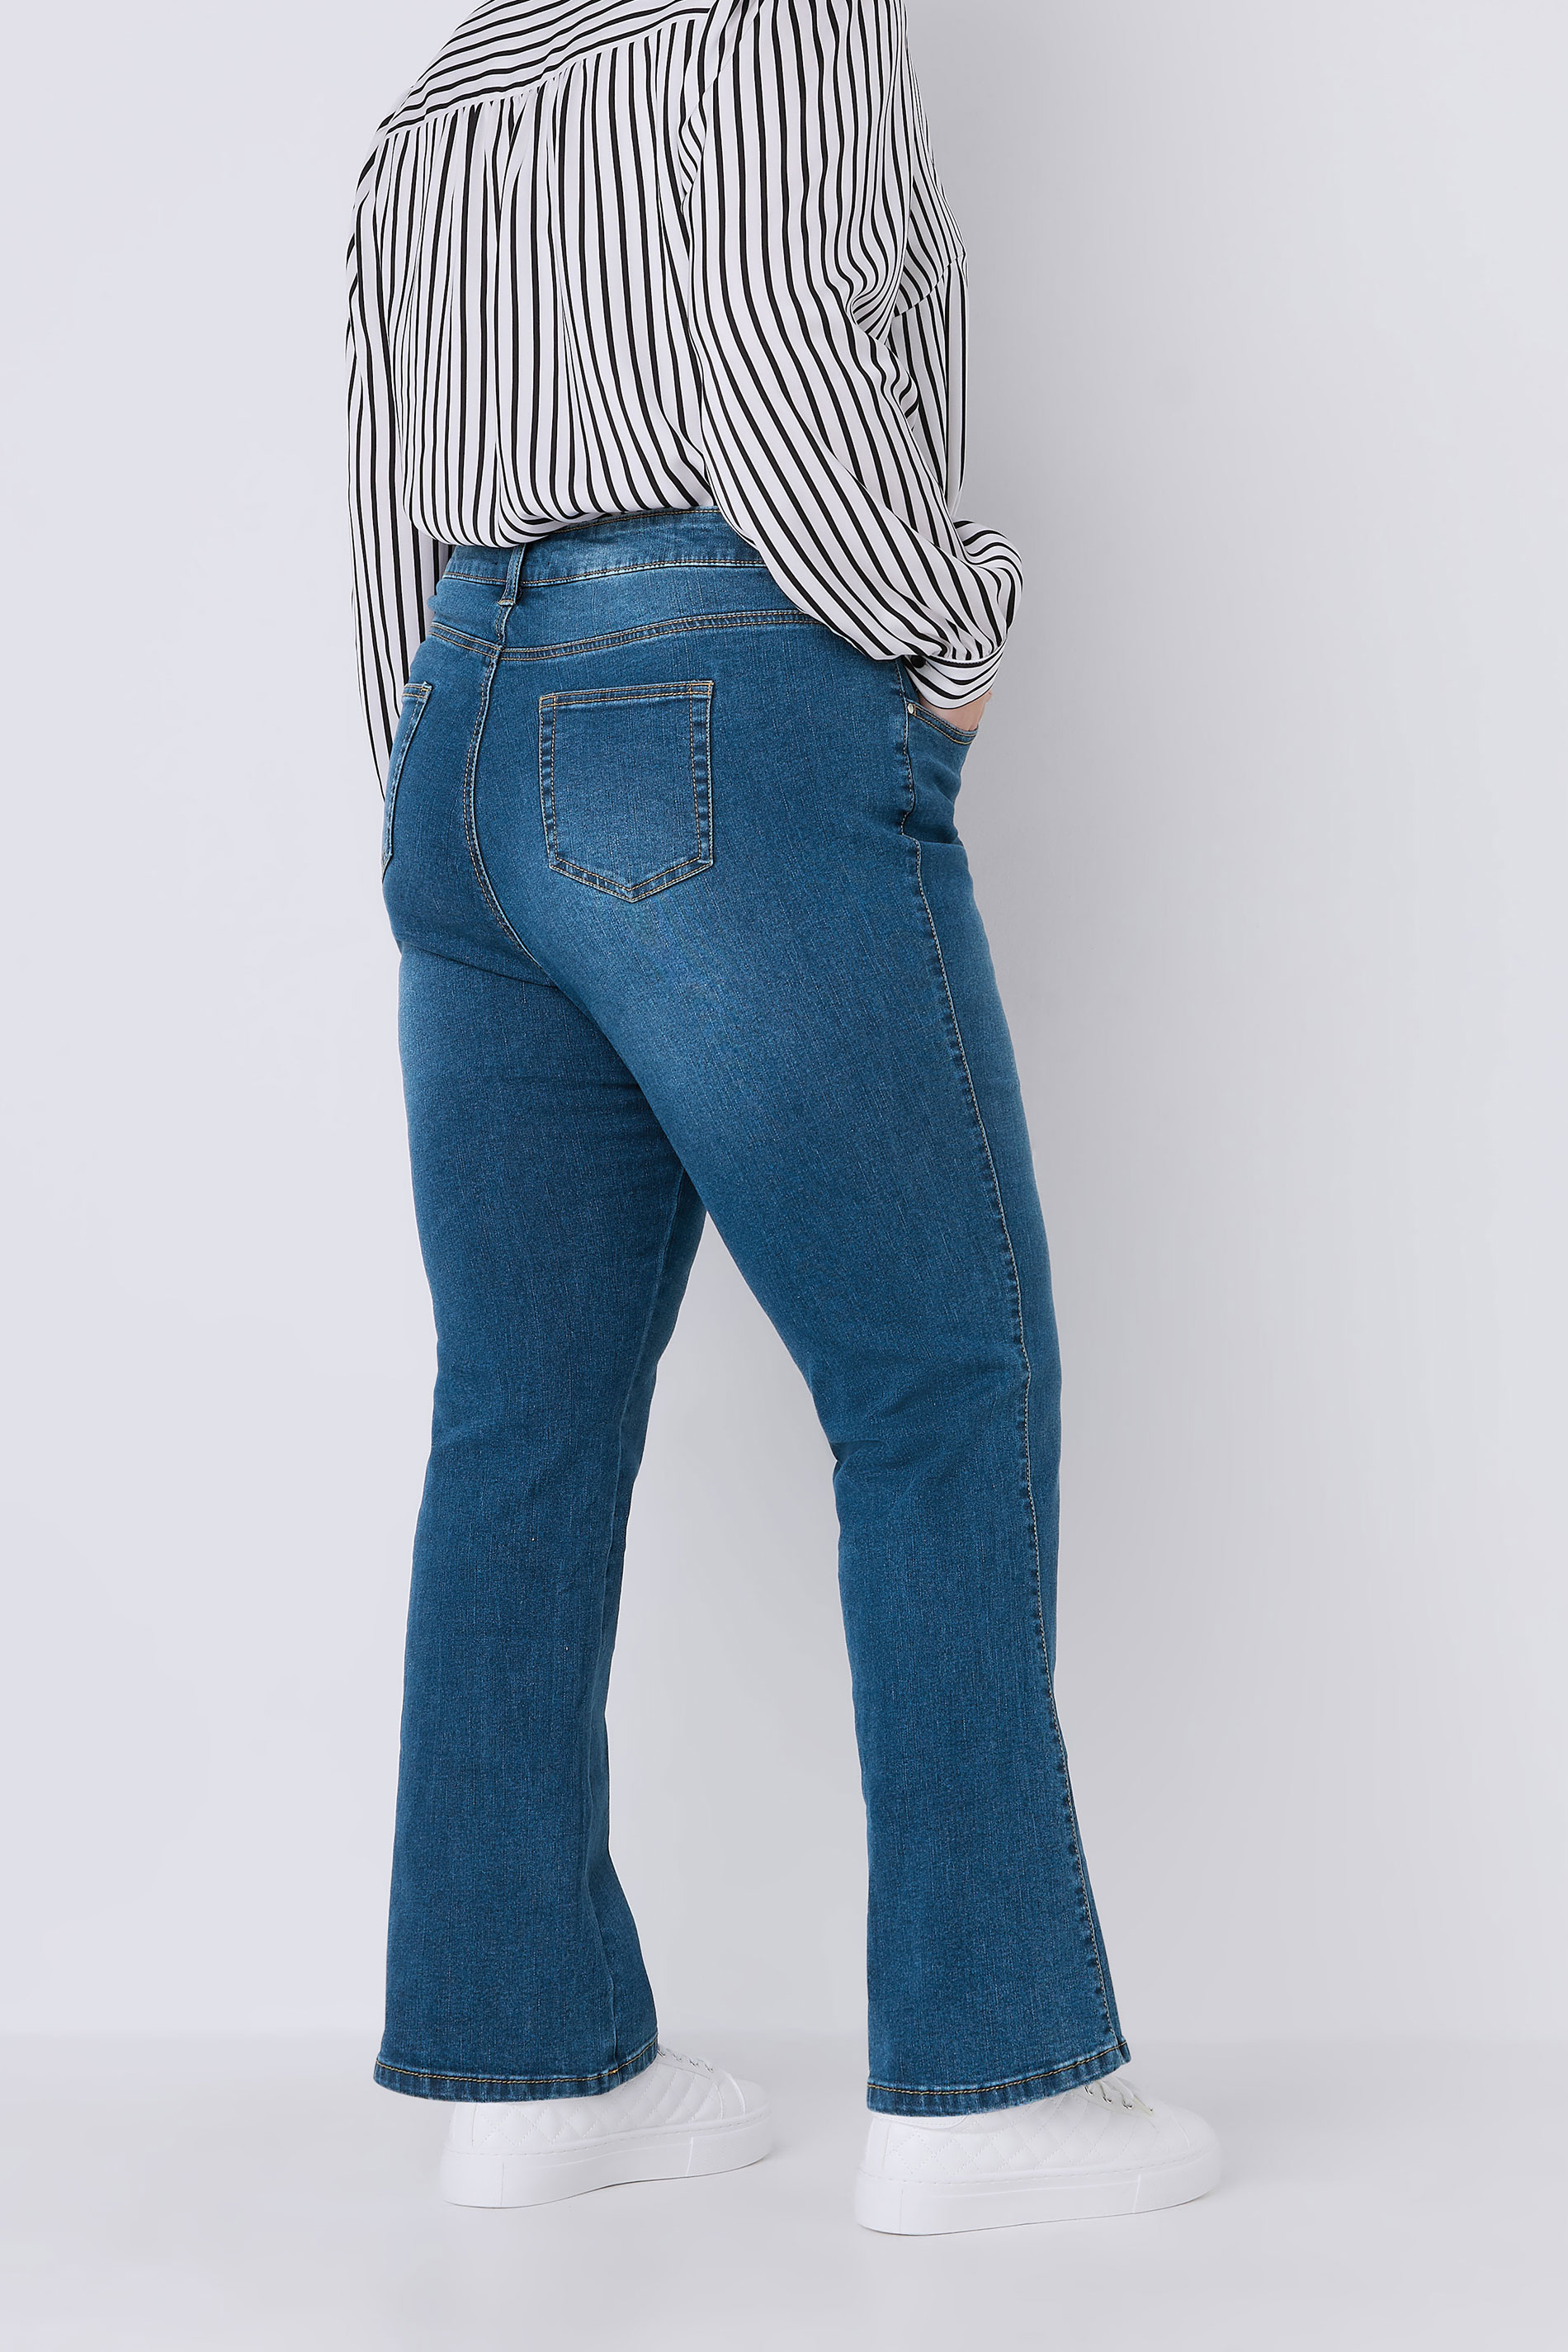 EVANS Plus Size Curve Fit Blue Mid Wash Bootcut Jeans | Evans 3